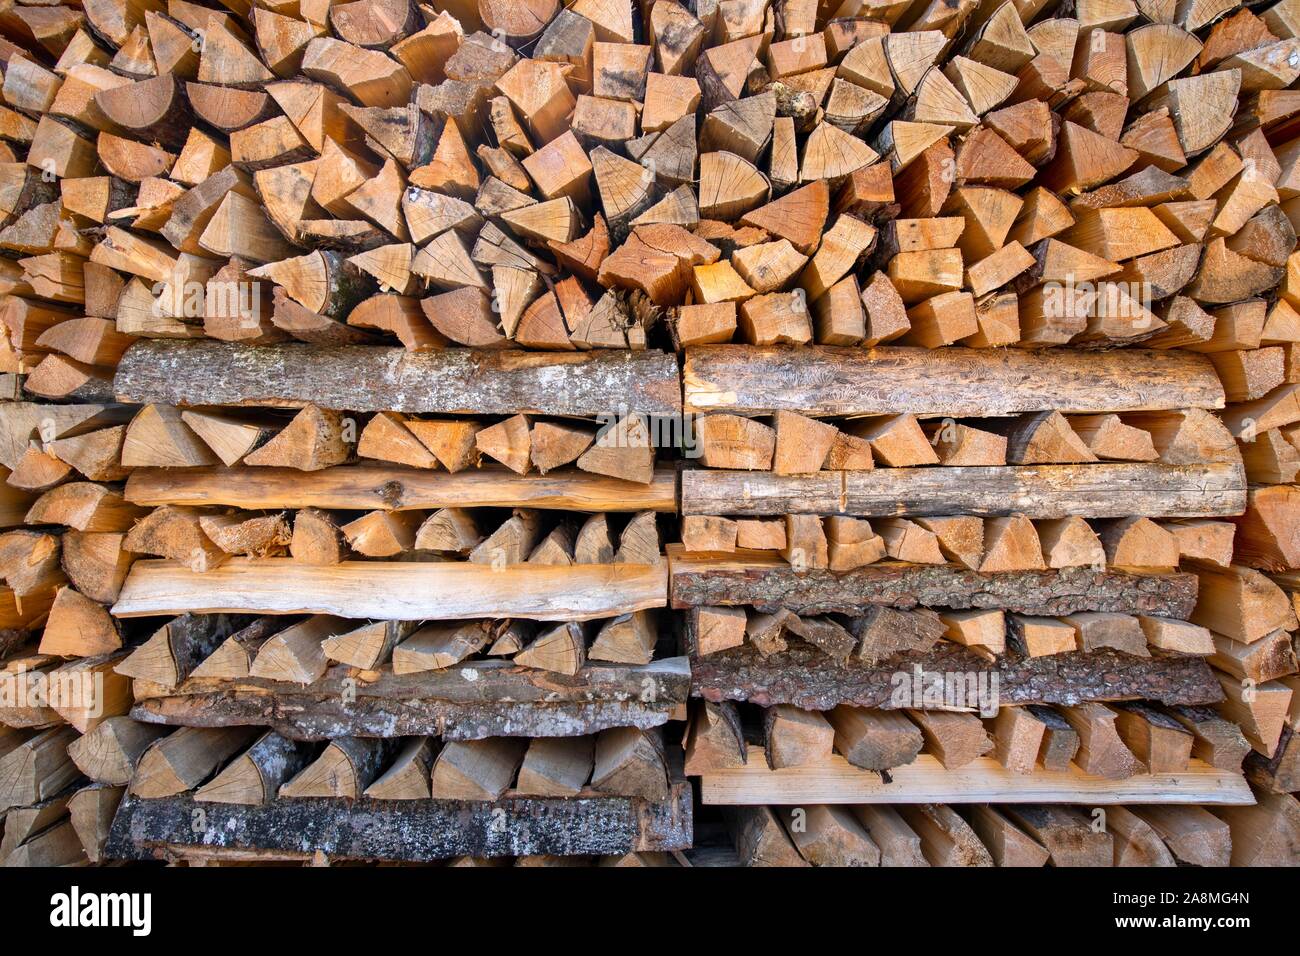 Stacked firewood, Meterscheiter, Schwaz, Tyrol, Austria Stock Photo